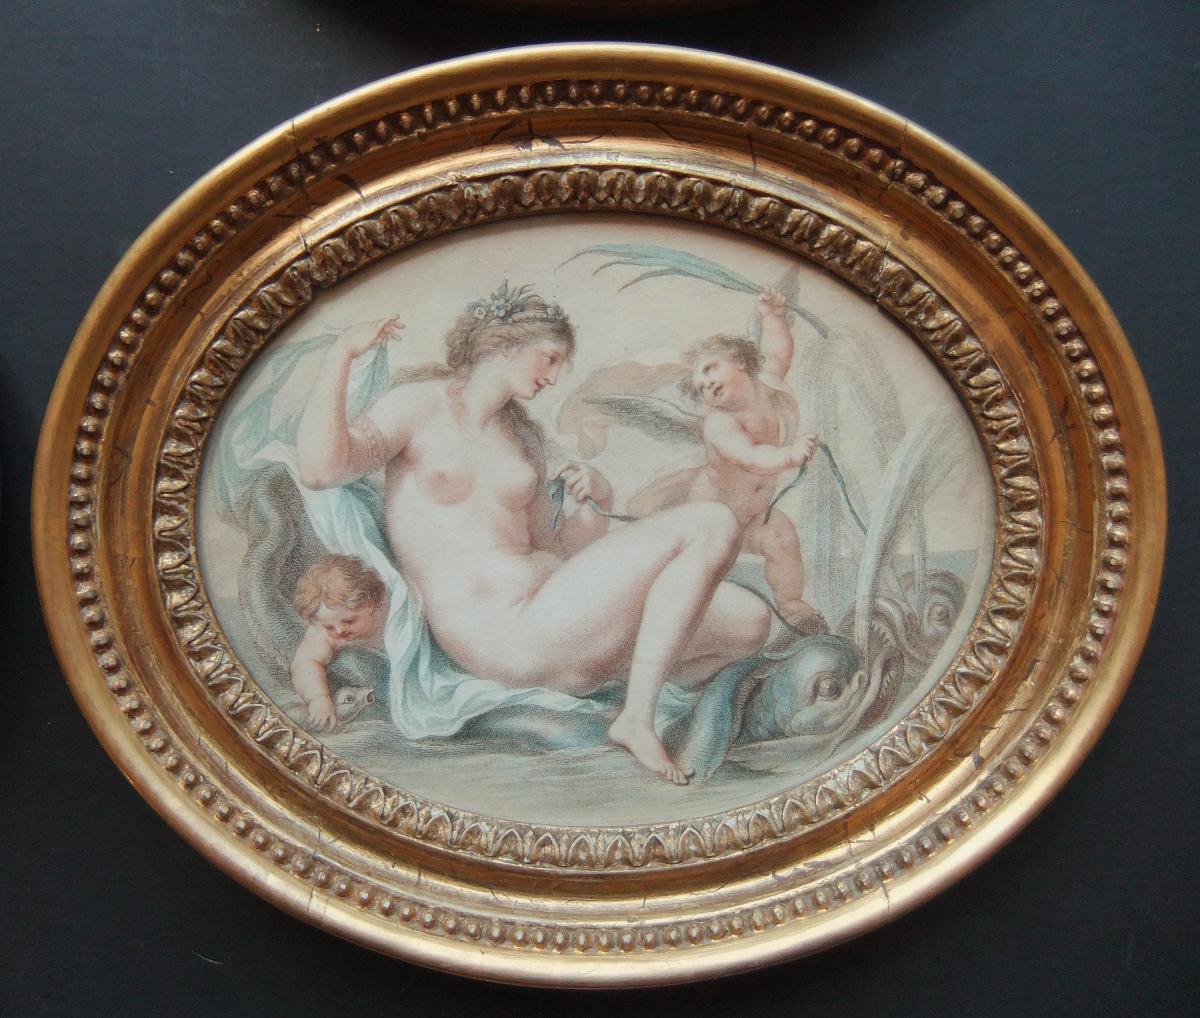 Cipriani Bartolozzi oval stipple engraving decorative prints